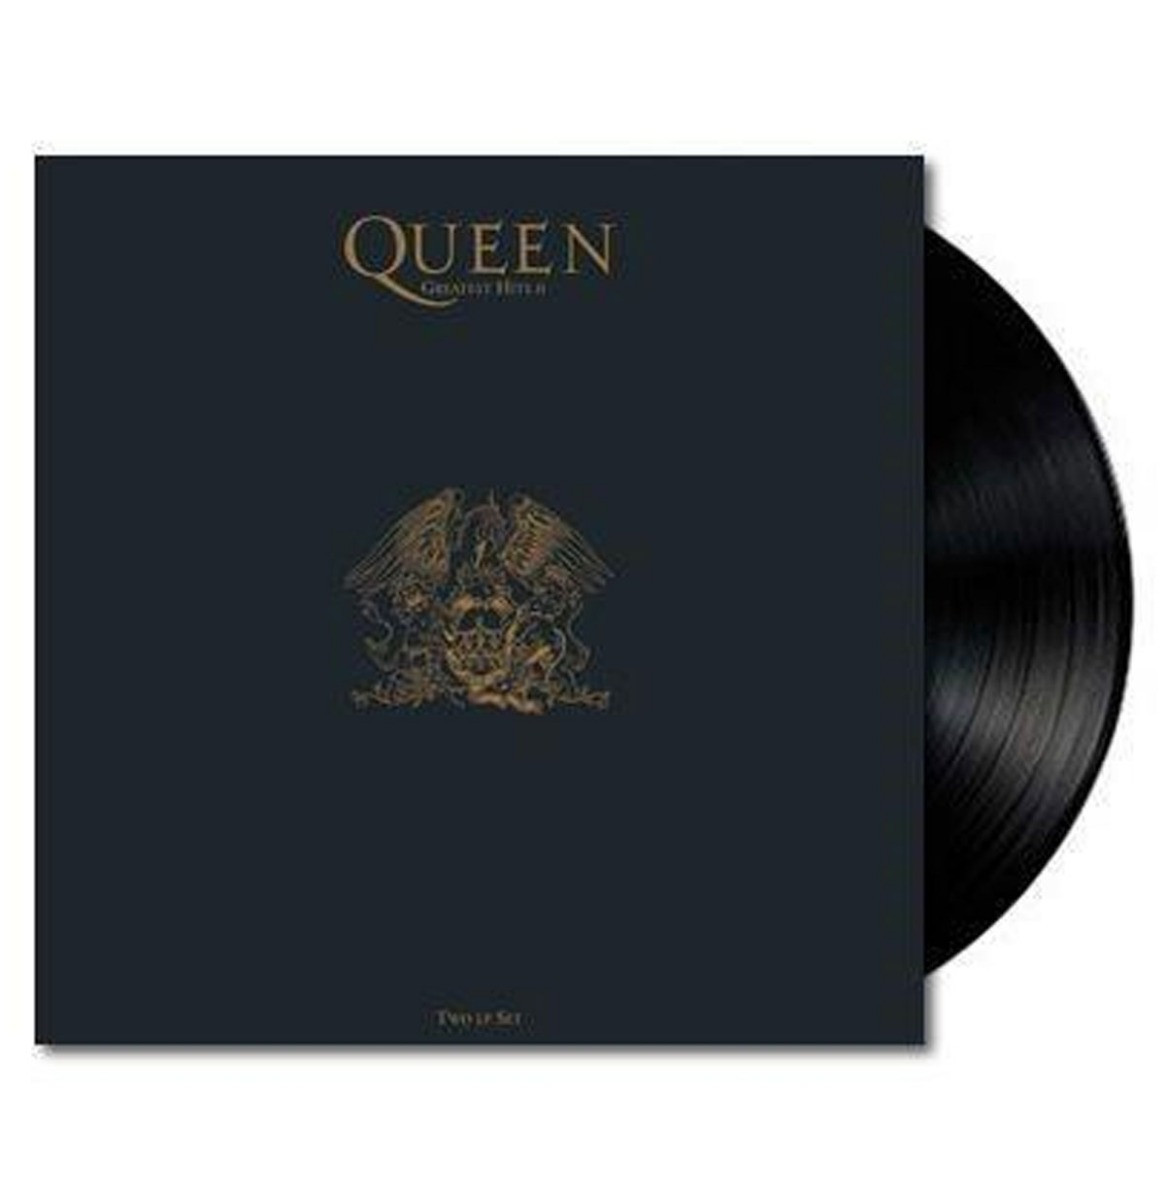 Queen - Greatest Hits II 2-LP